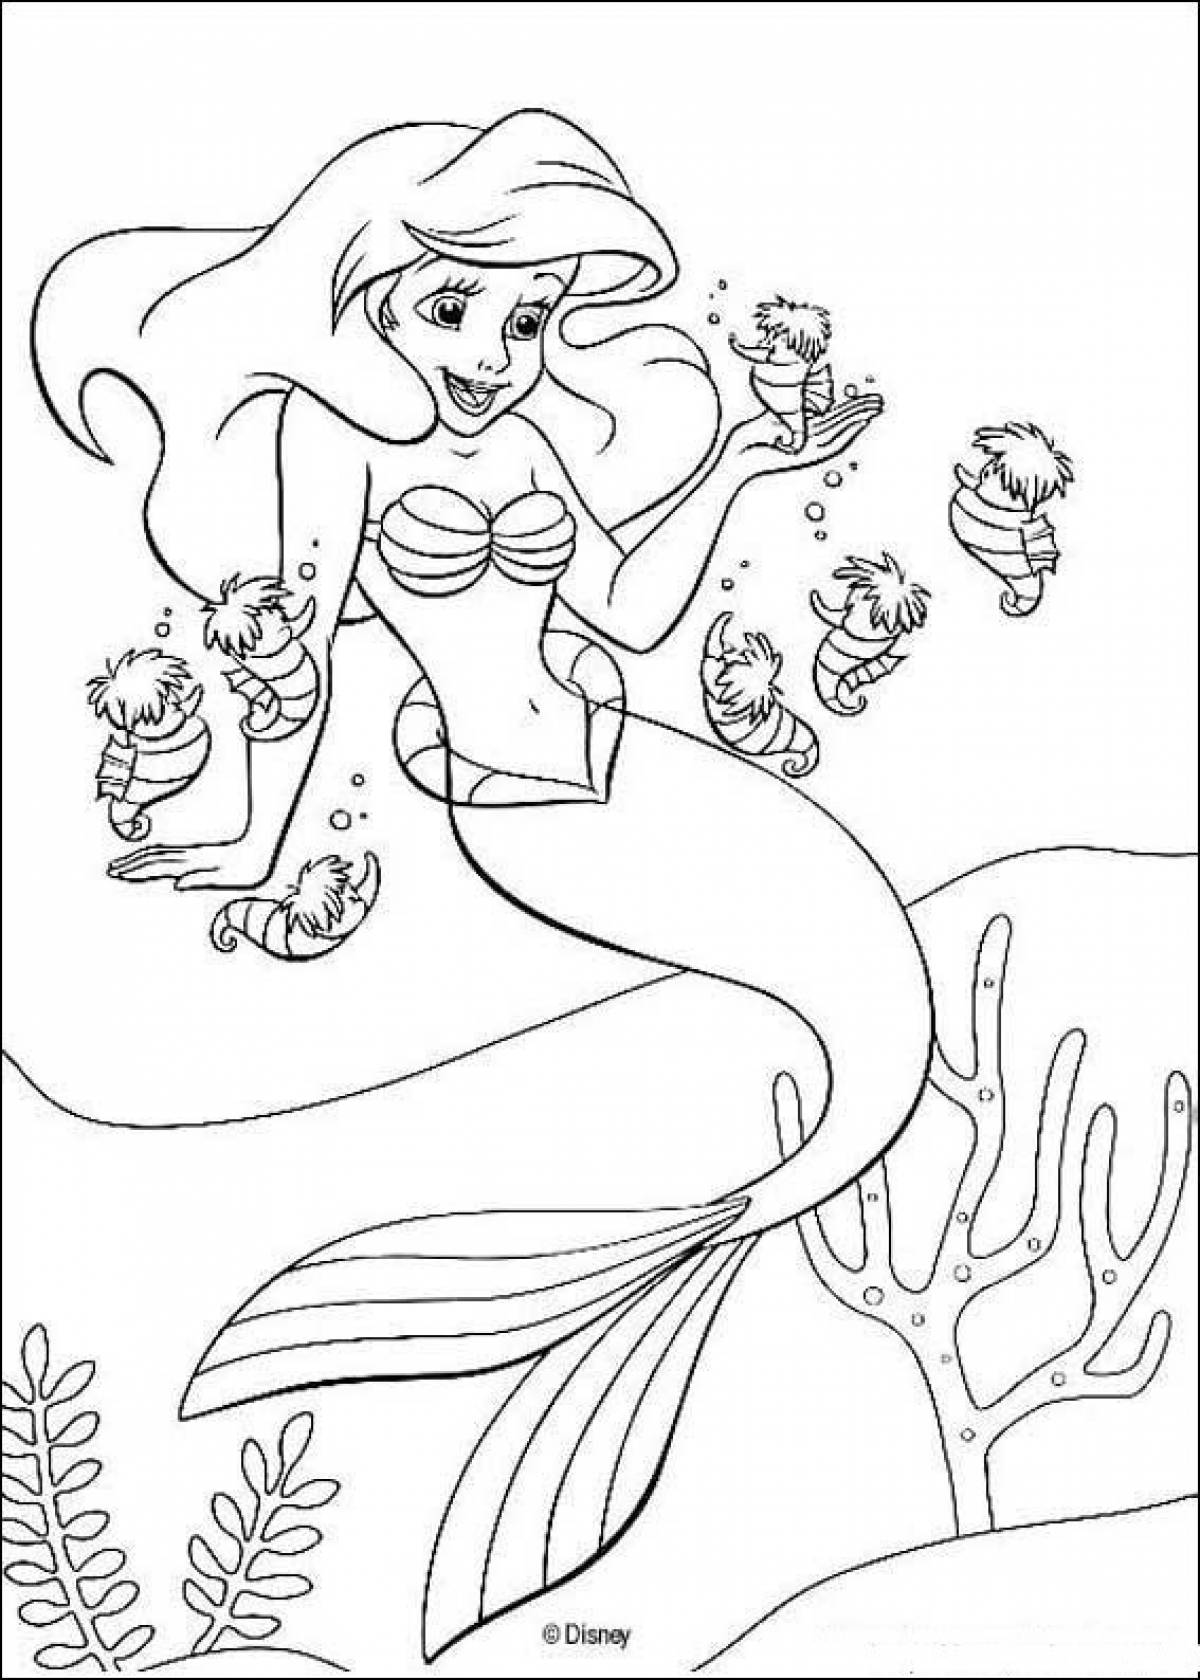 Mermaid coloring book children's print